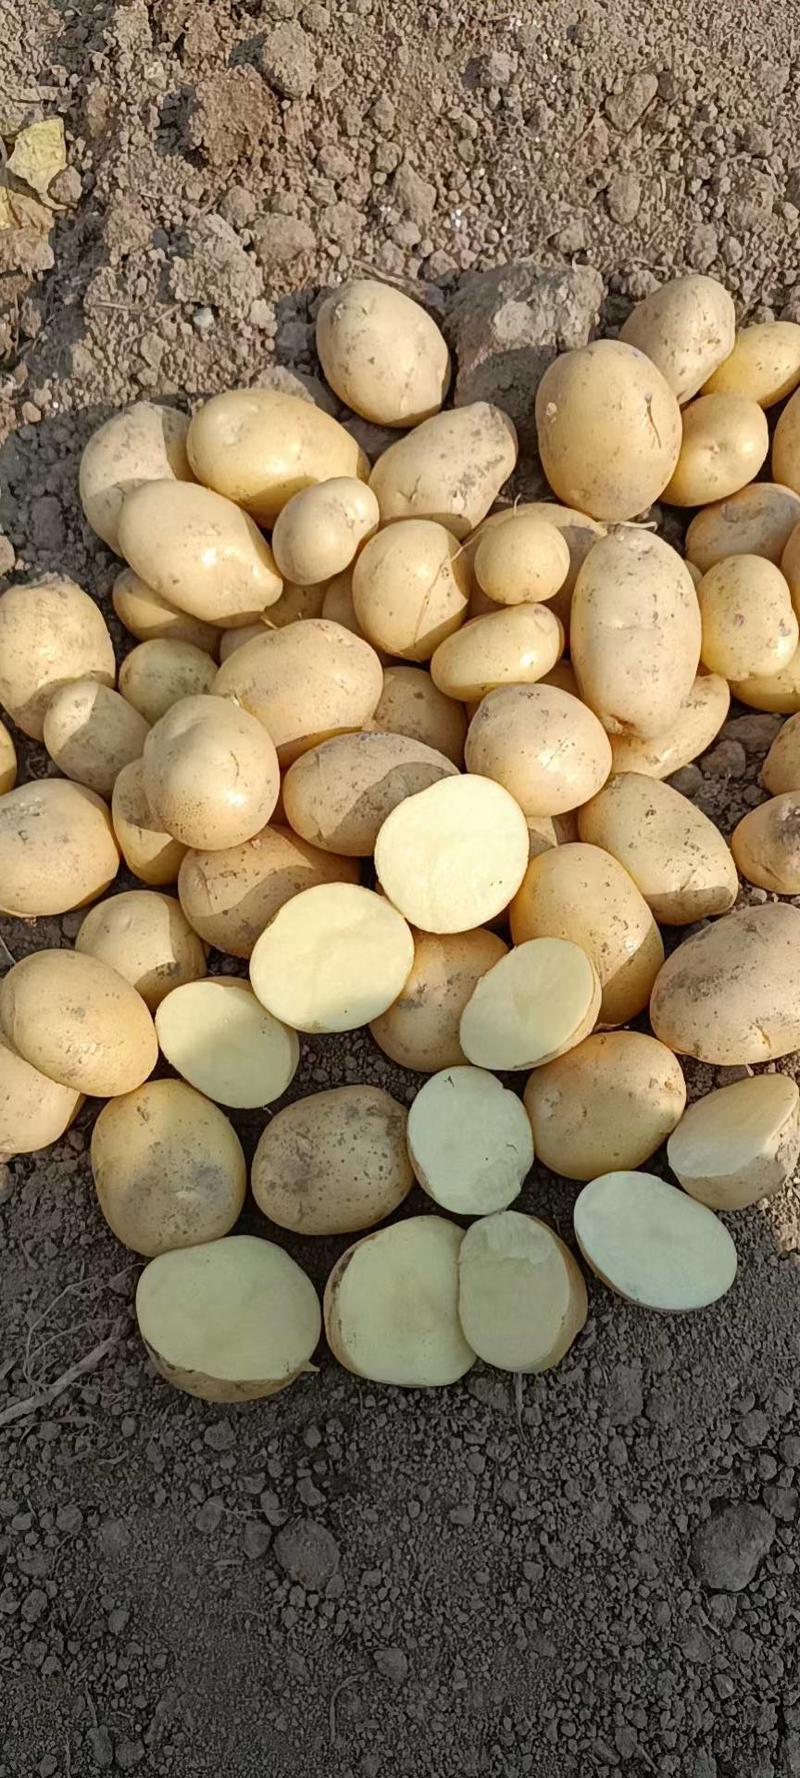 云南土豆白皮丽薯土豆货源充足品质保证全国发货诚信经营